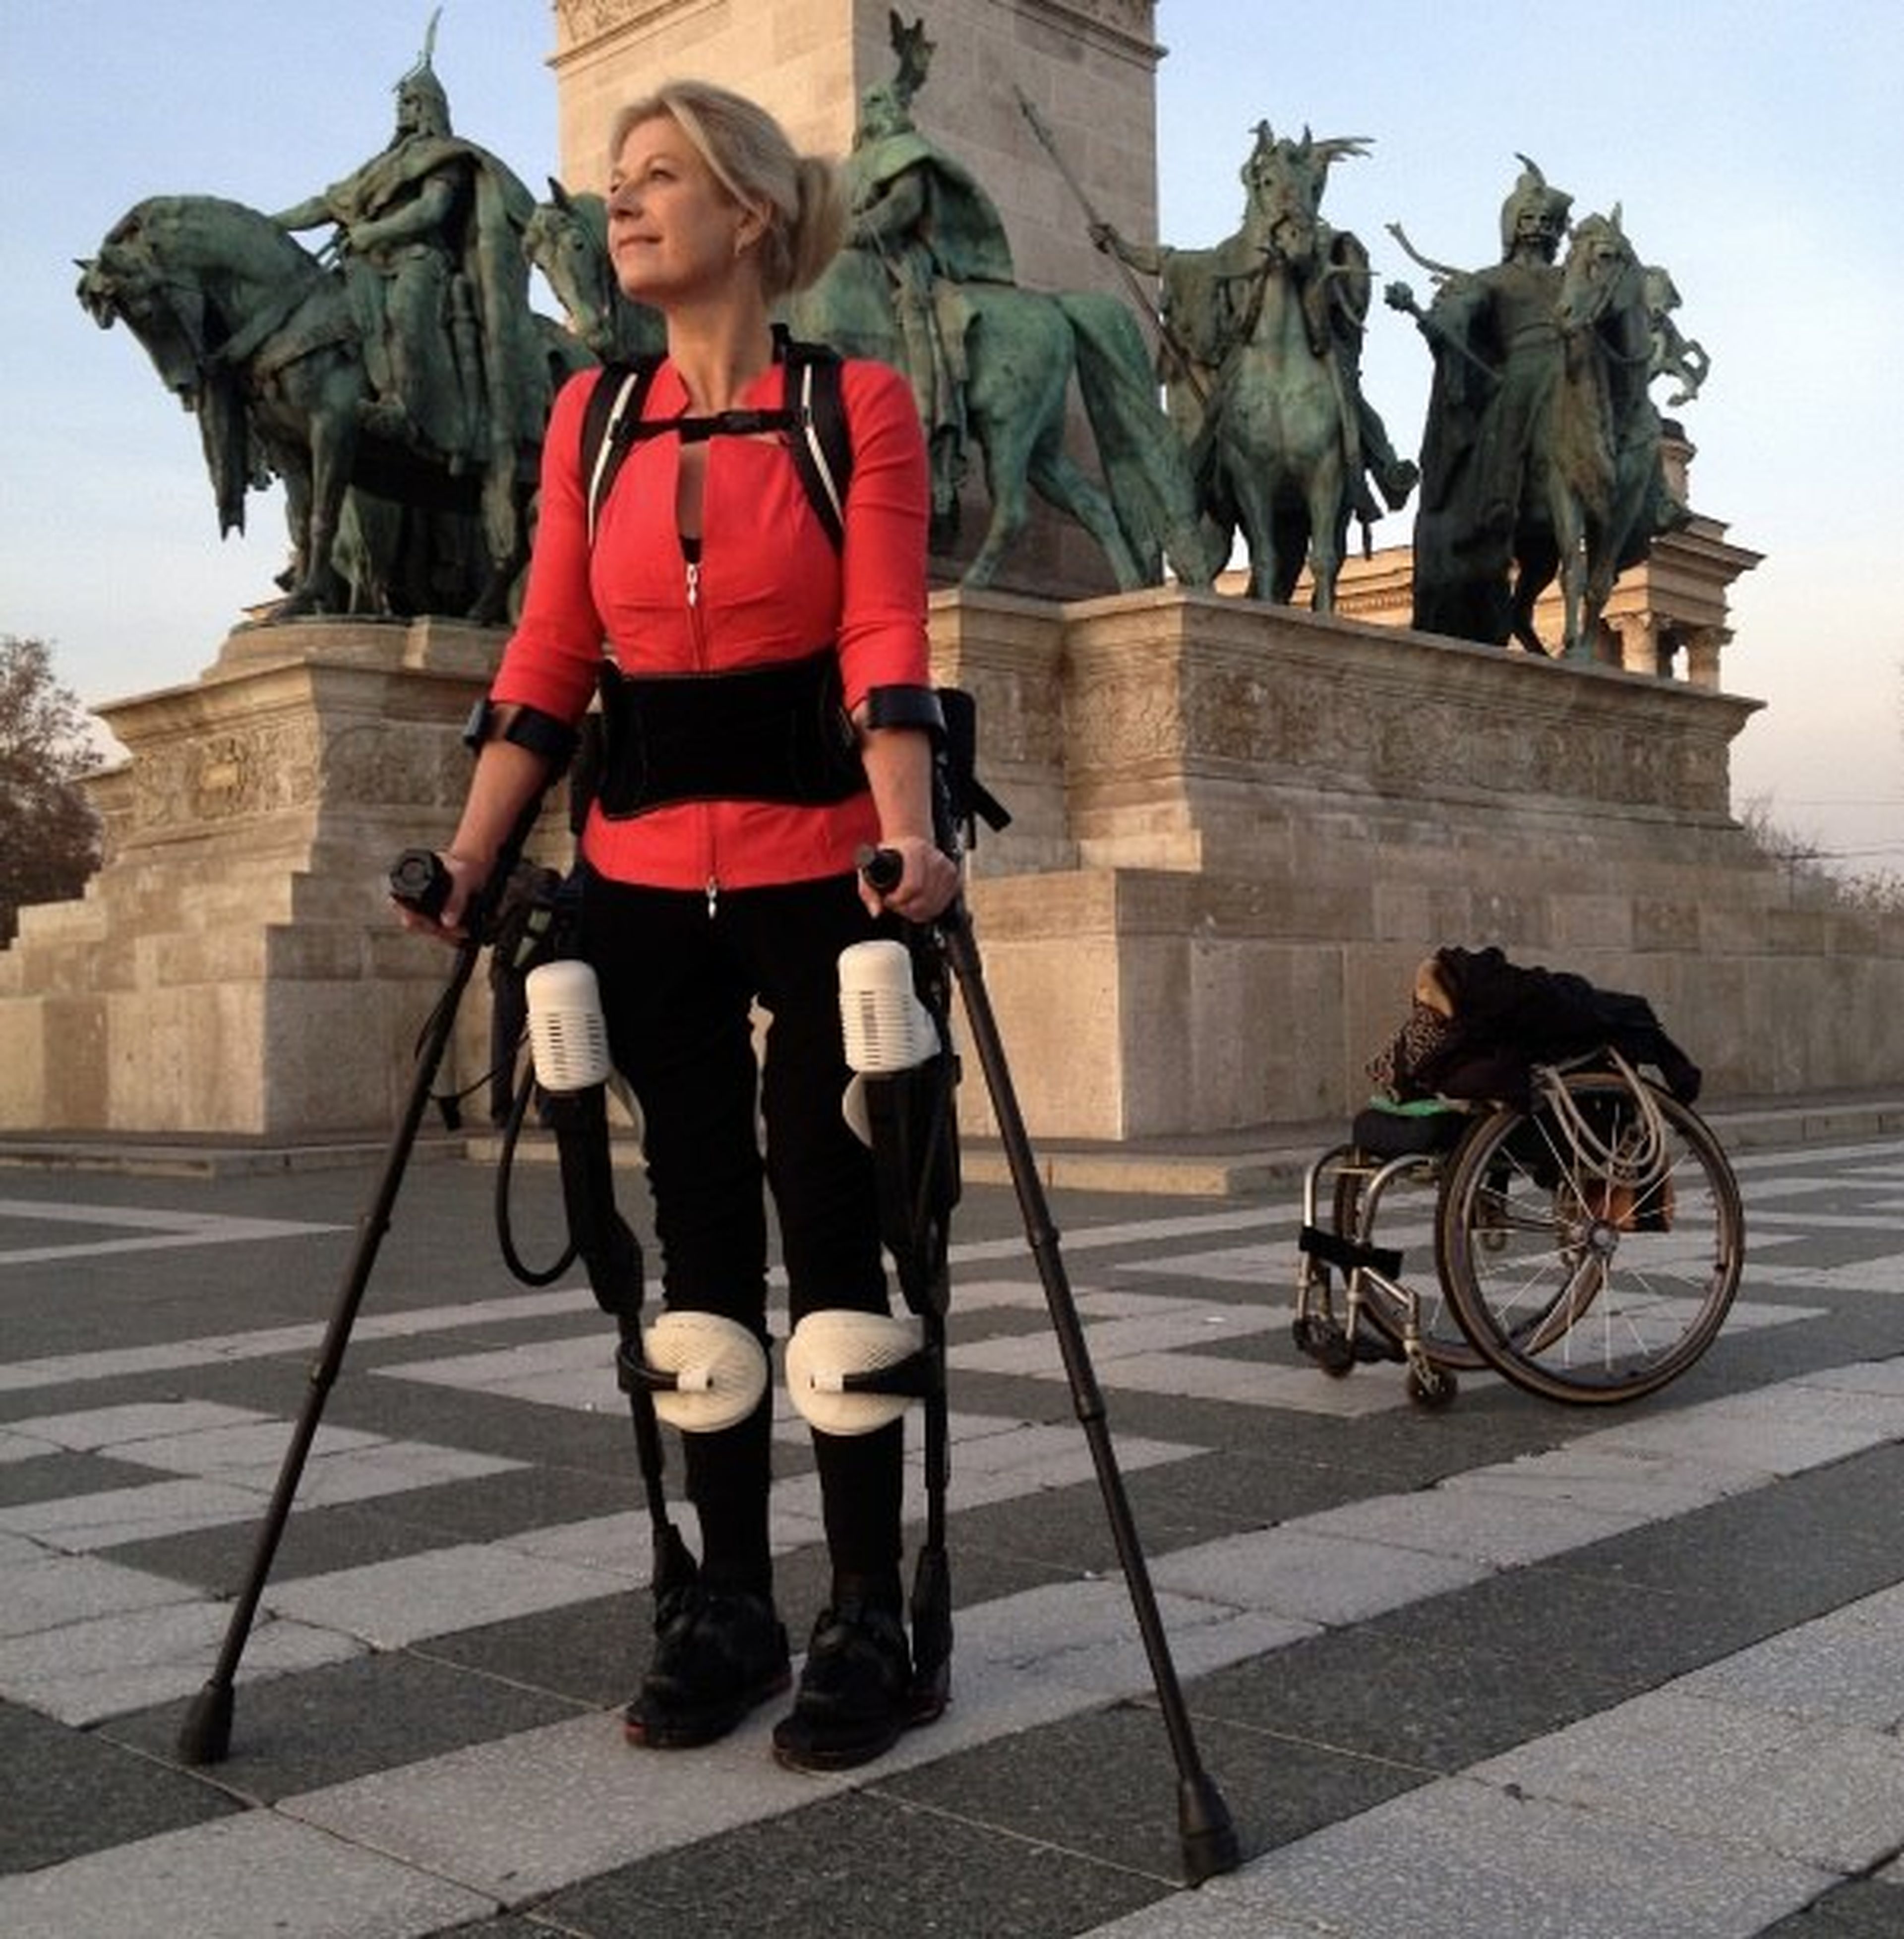 Boxtel vuelve a caminar con el exosuit de Ekso Bionics